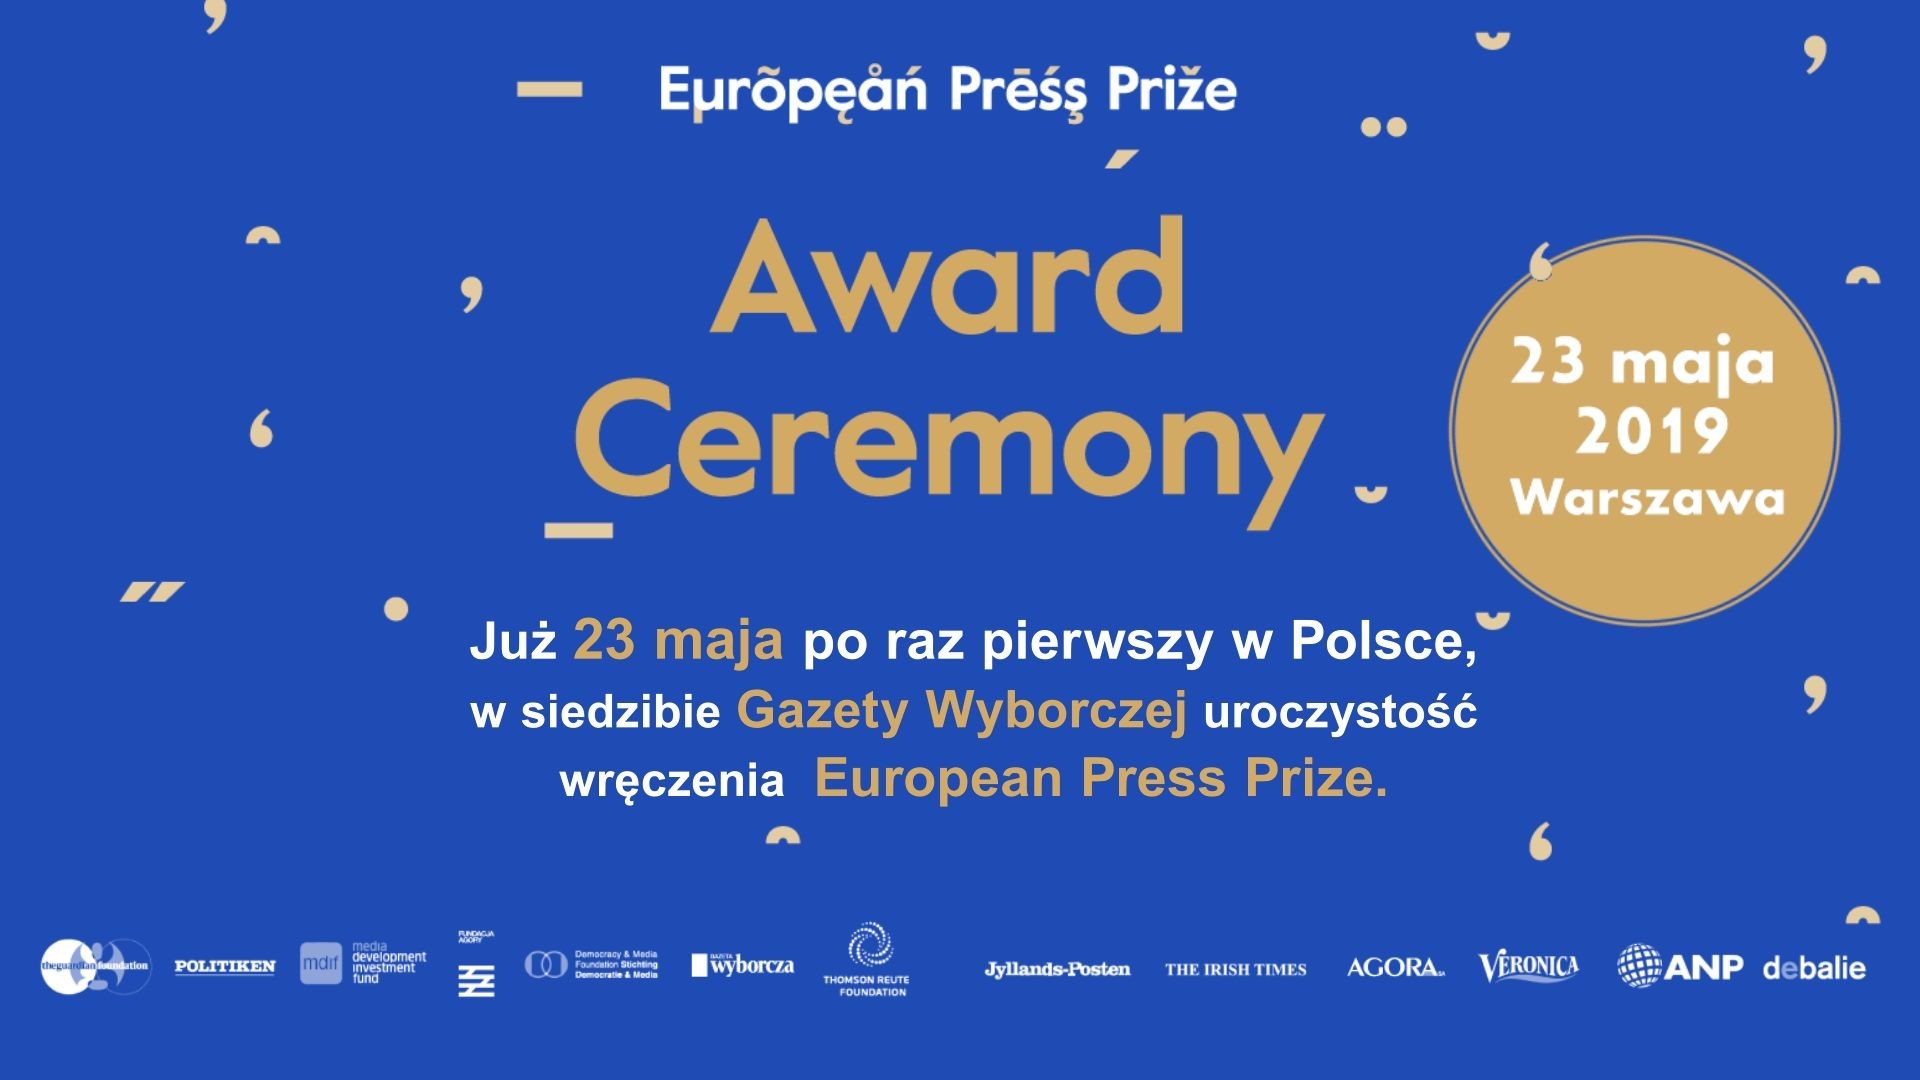 Wręczenie European Press Prize już 23 maja br.! Wyborcza.pl prezentuje rozmowę z jedyną polską dziennikarką z grona nominowanych